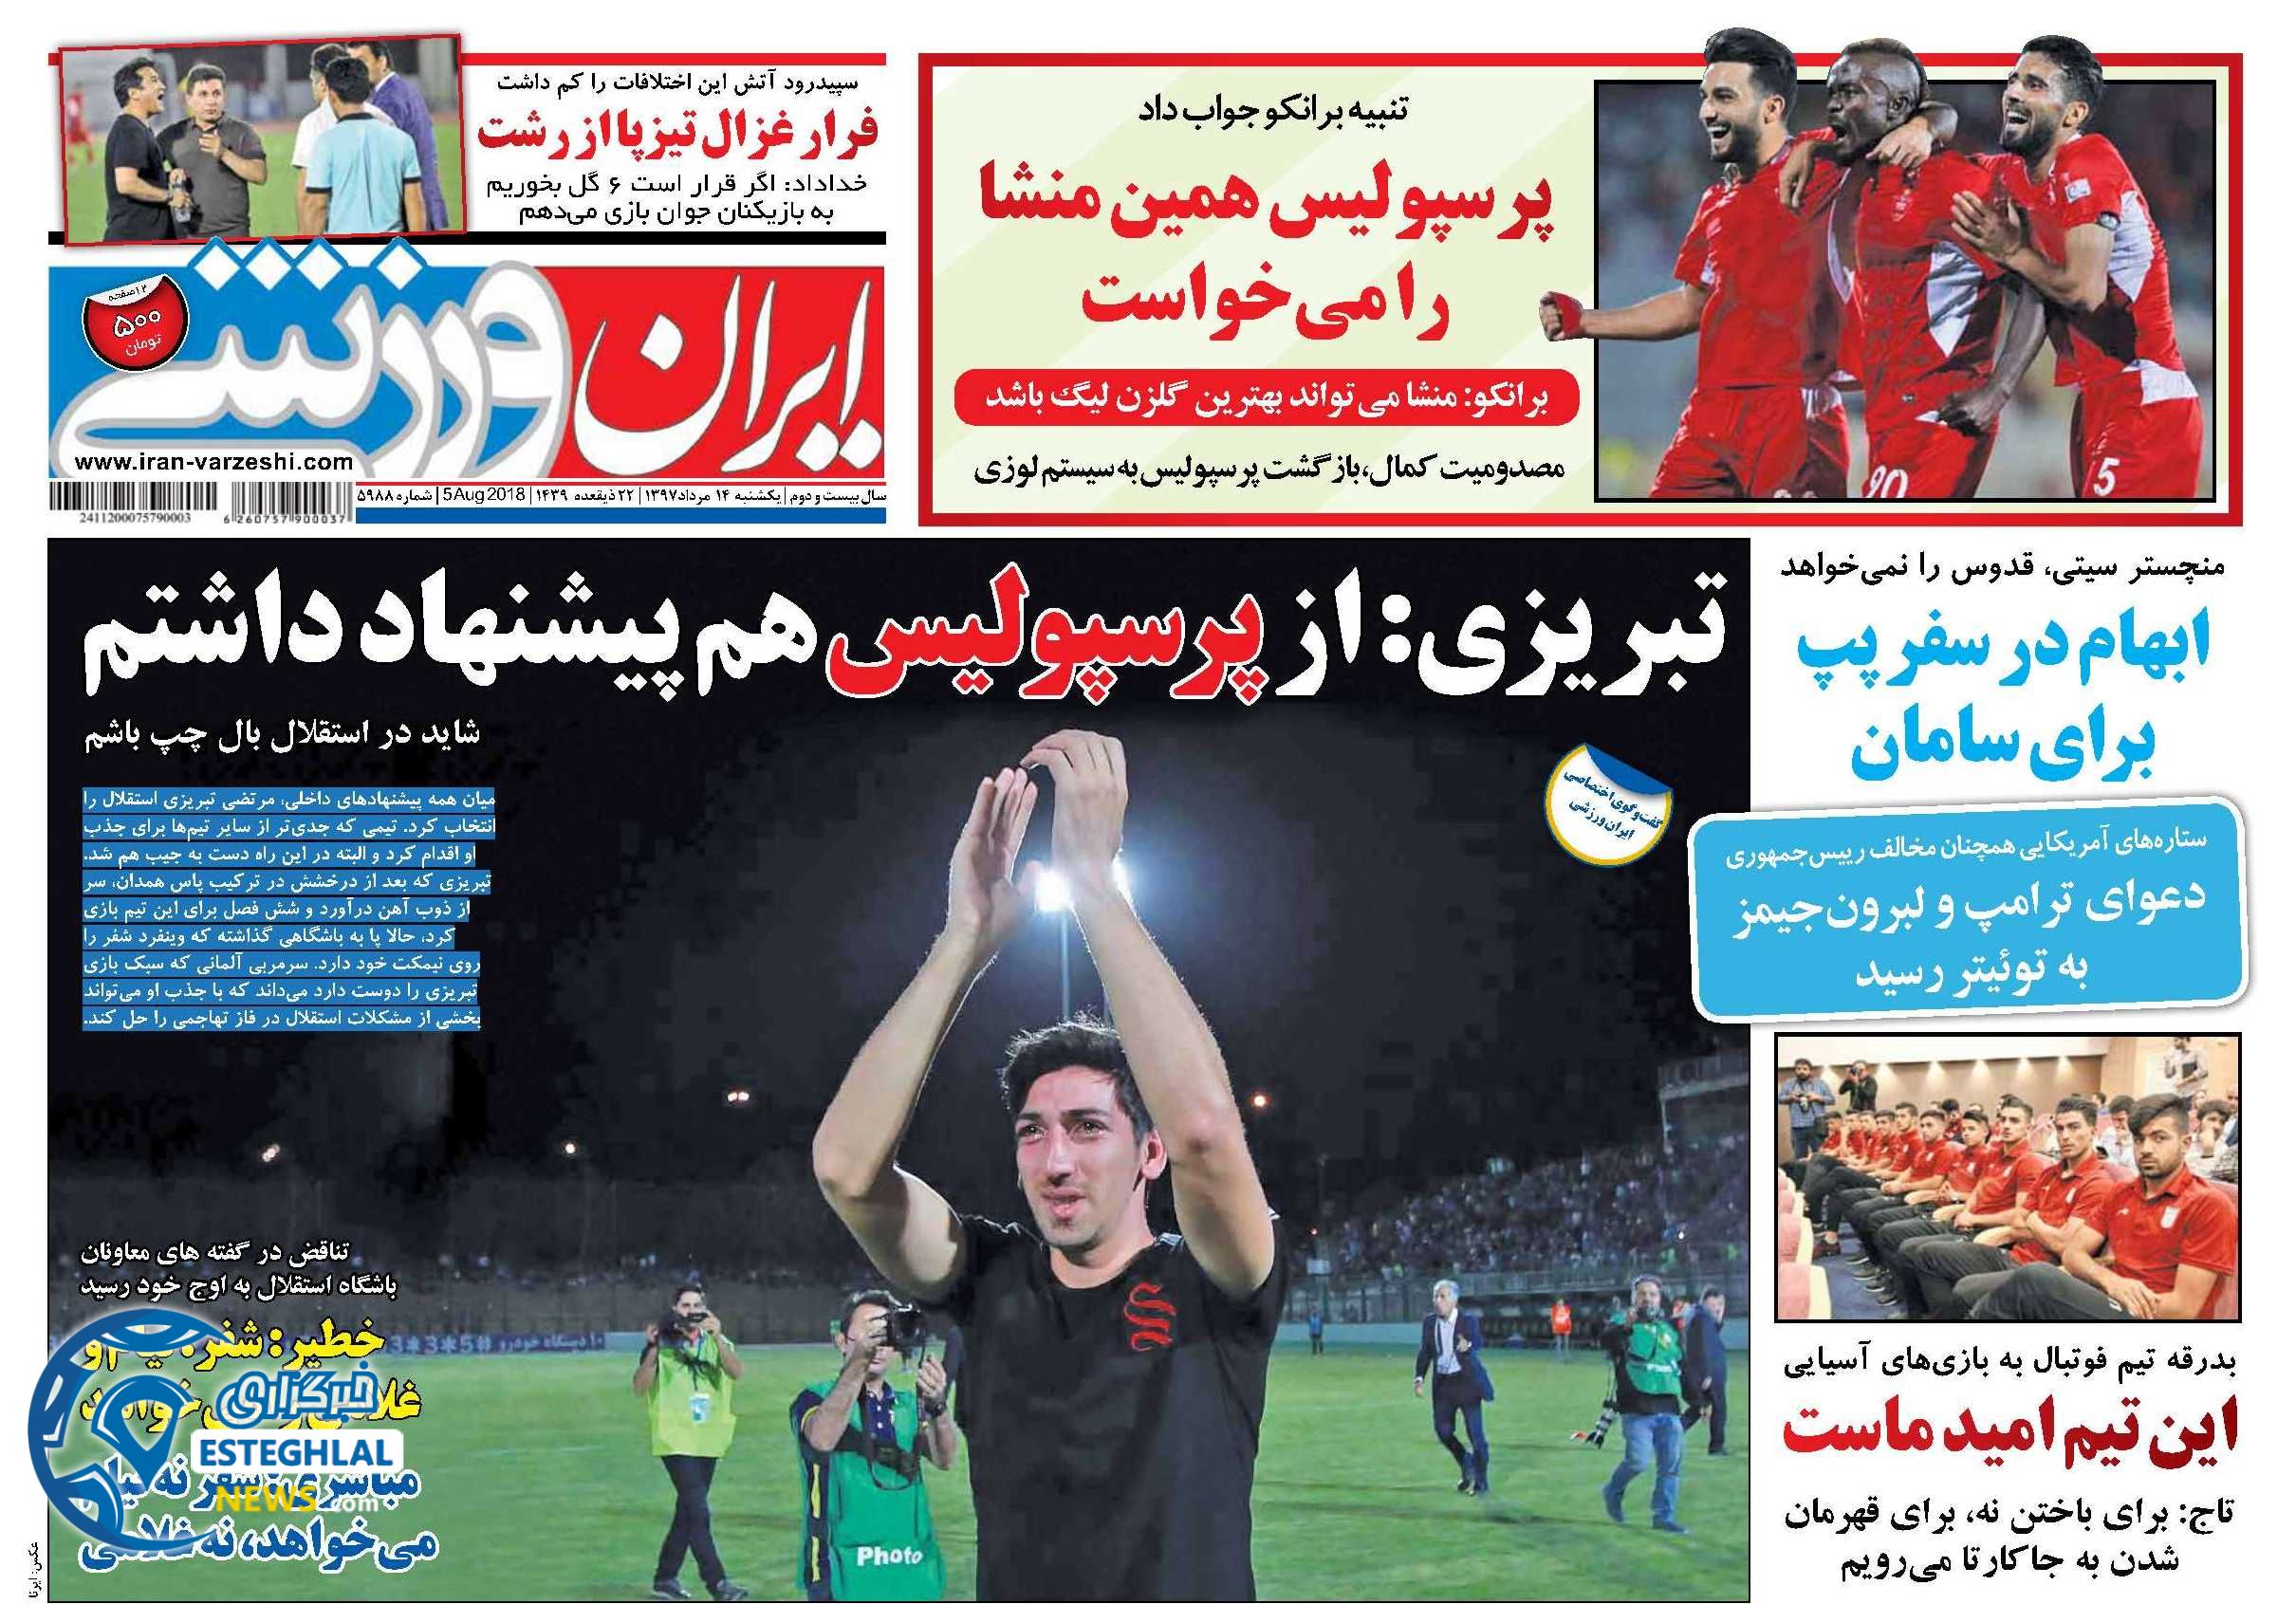  روزنامه ایران ورزشی یکشنبه 14 مرداد 1397 